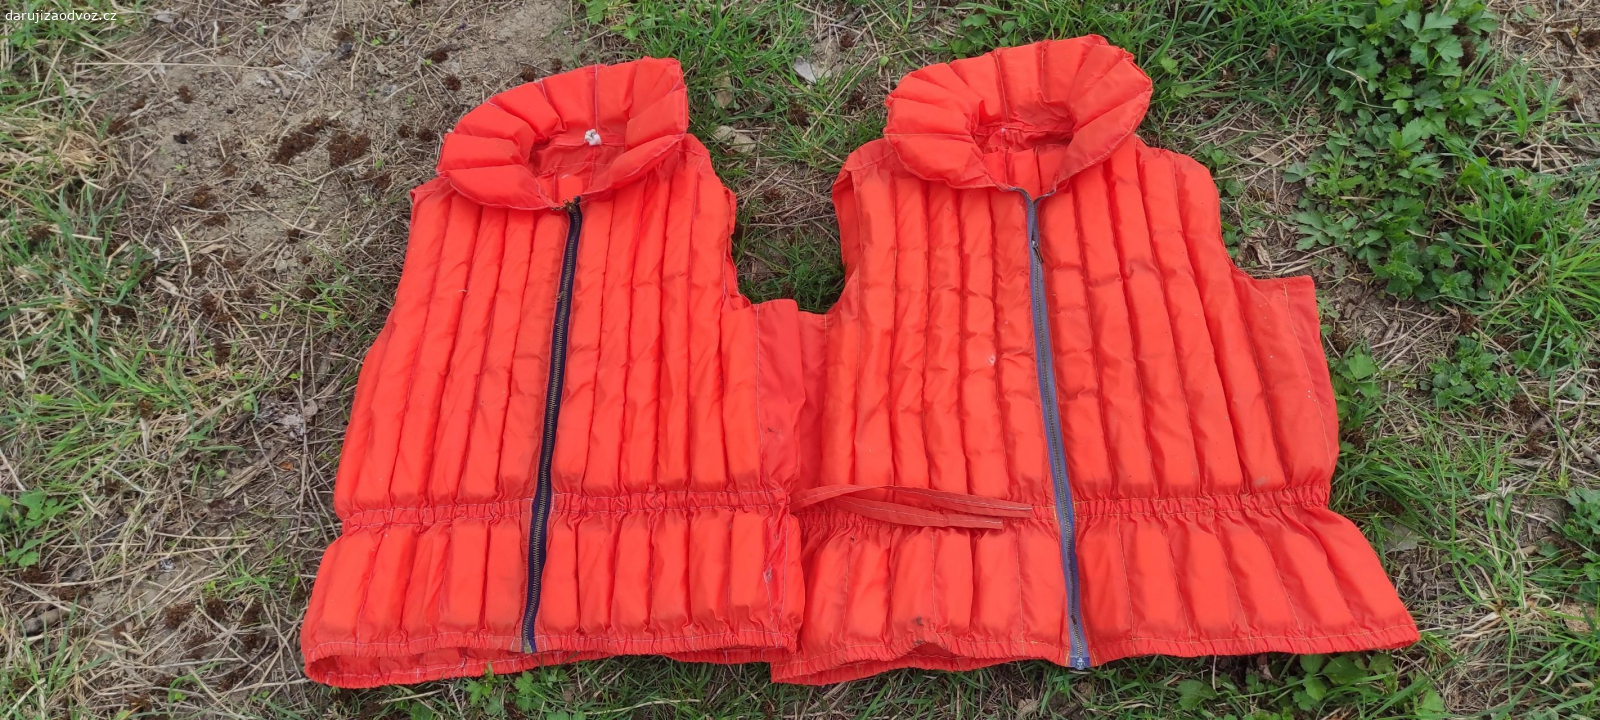 Daruji záchranné vesty 10ks. záchranné vesty, Staré, používané, stav dle foto, u některých je třeba opravit zip.